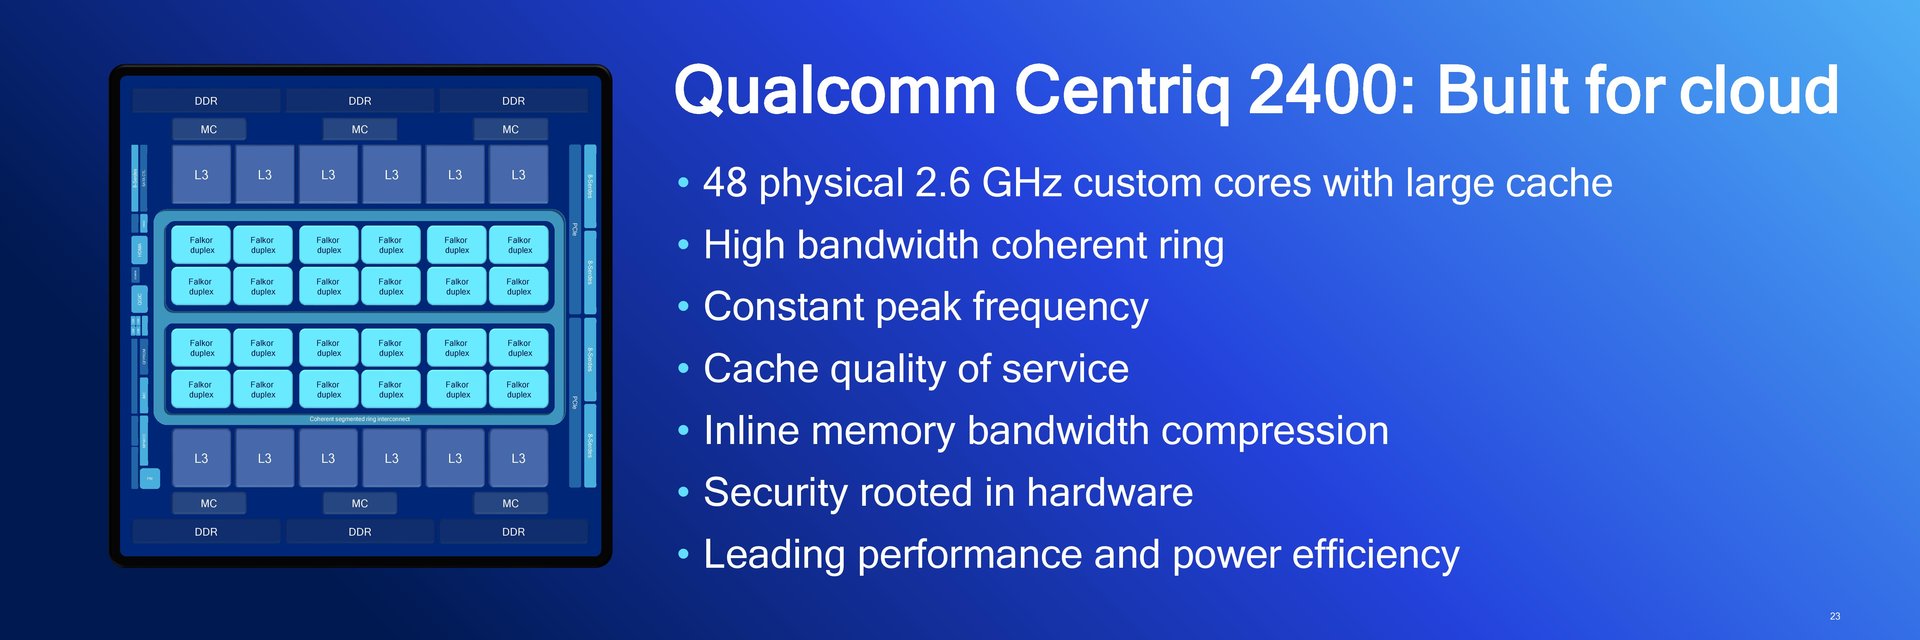 Qualcomm Centriq 2400 im Detail